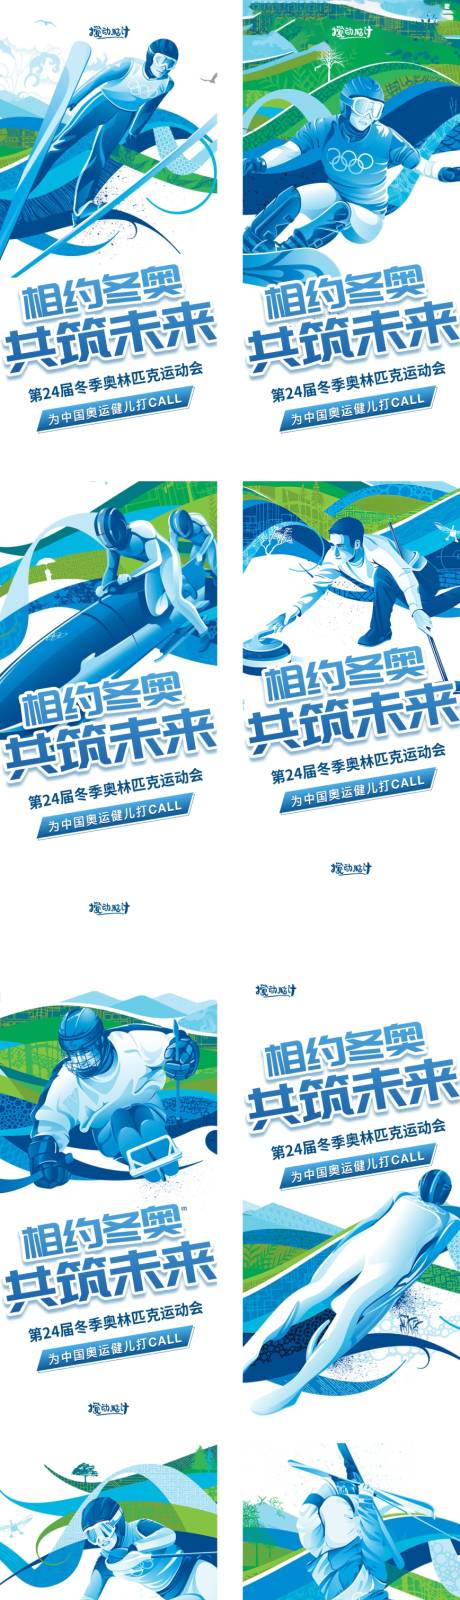 北京冬奥会项目系列稿